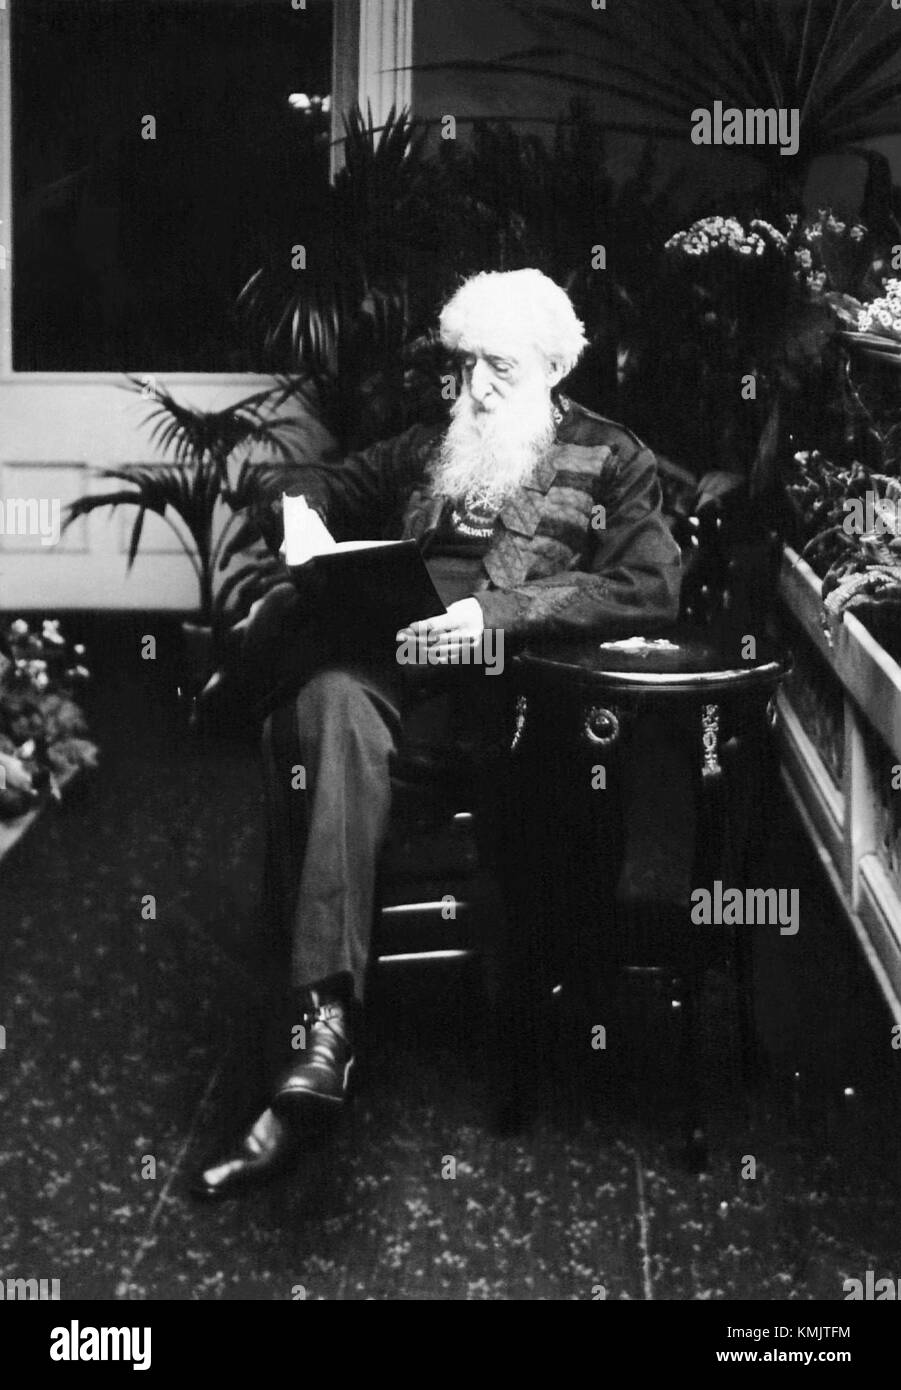 William Booth, fondatore e generale dell'Esercito della salvezza, in una fotografia del 1910 di Thomas Bales Coombs. Foto Stock